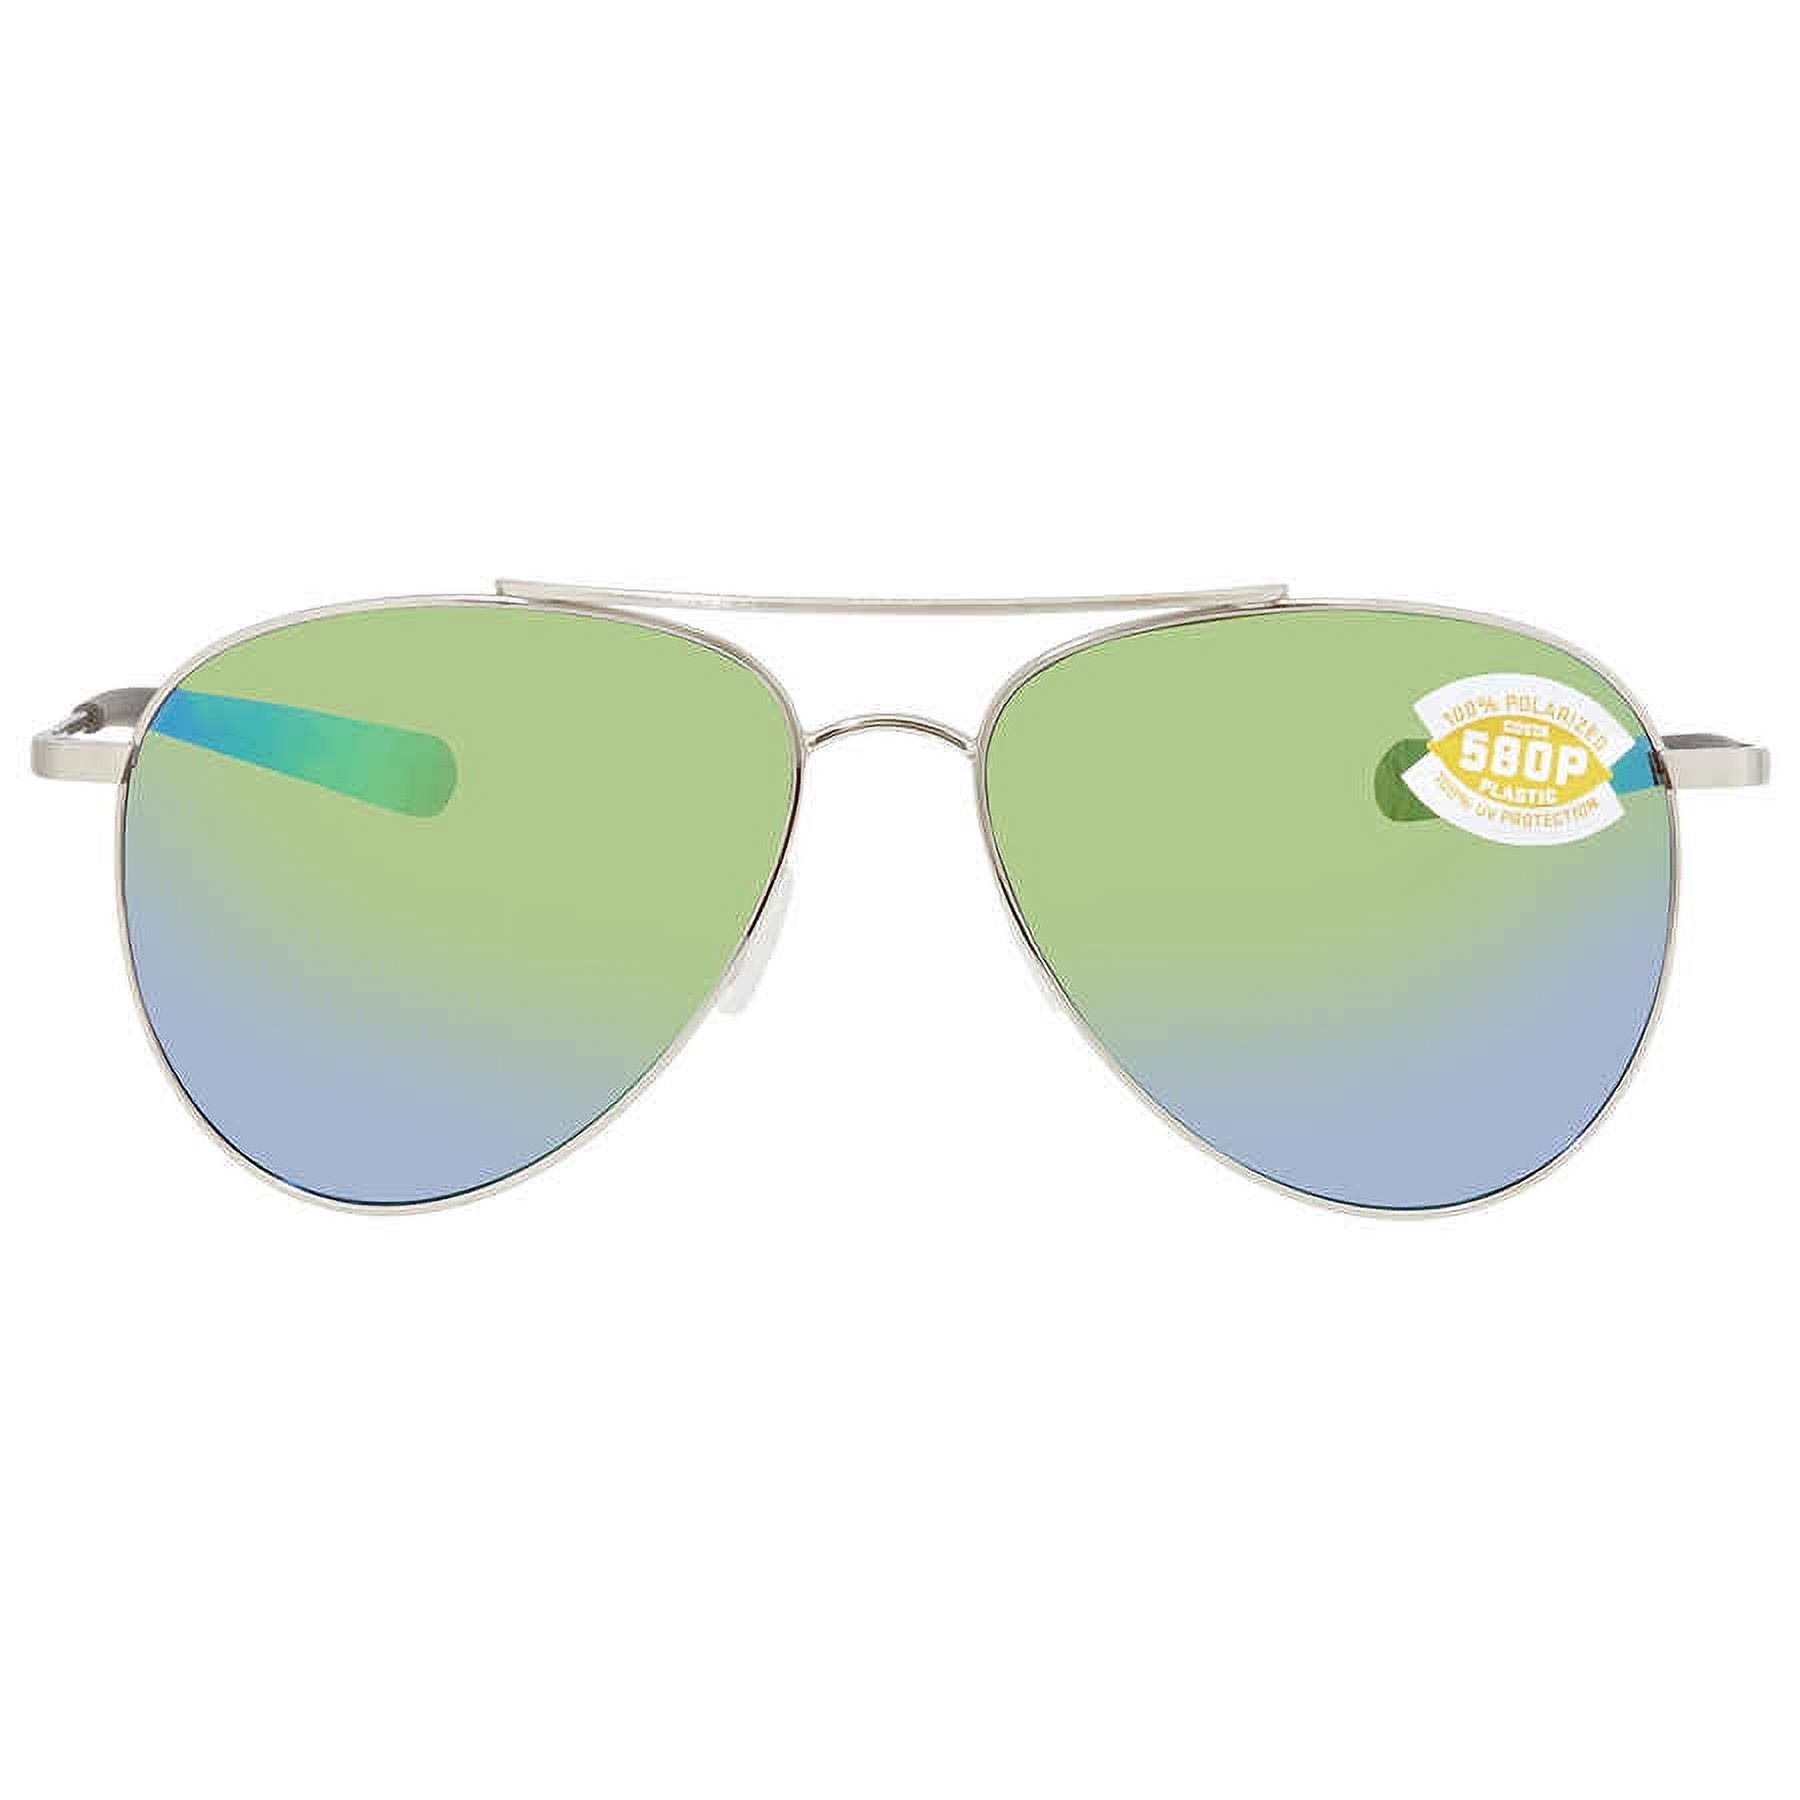 Costa Del Mar Cook Green Mirror 580P Sunglasses Ladies Sunglasses COO 21 OGMP - image 2 of 3